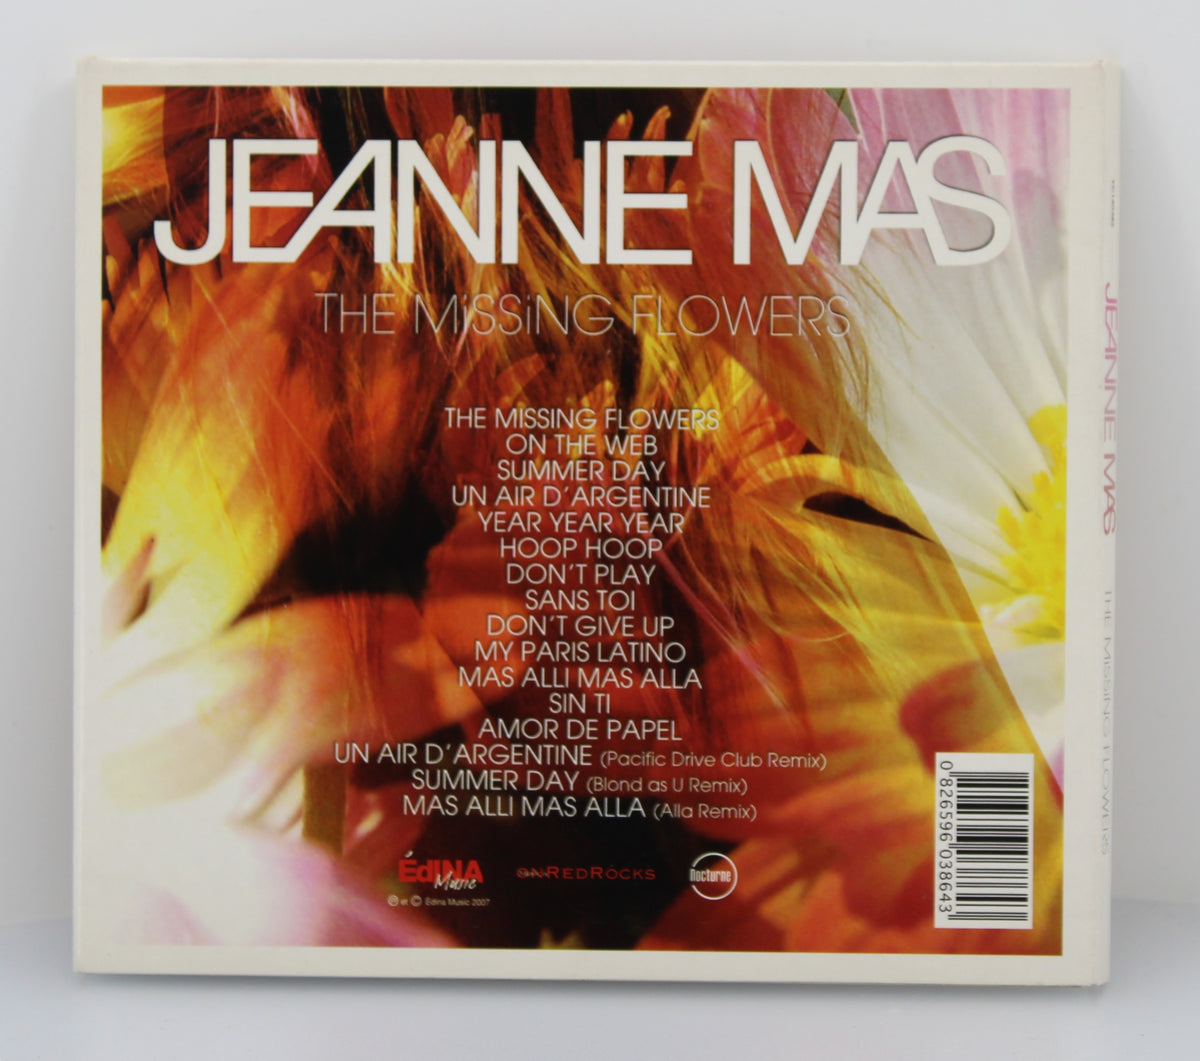 Jeanne Mas - The Missing Flowers, CD, Album, France 2007